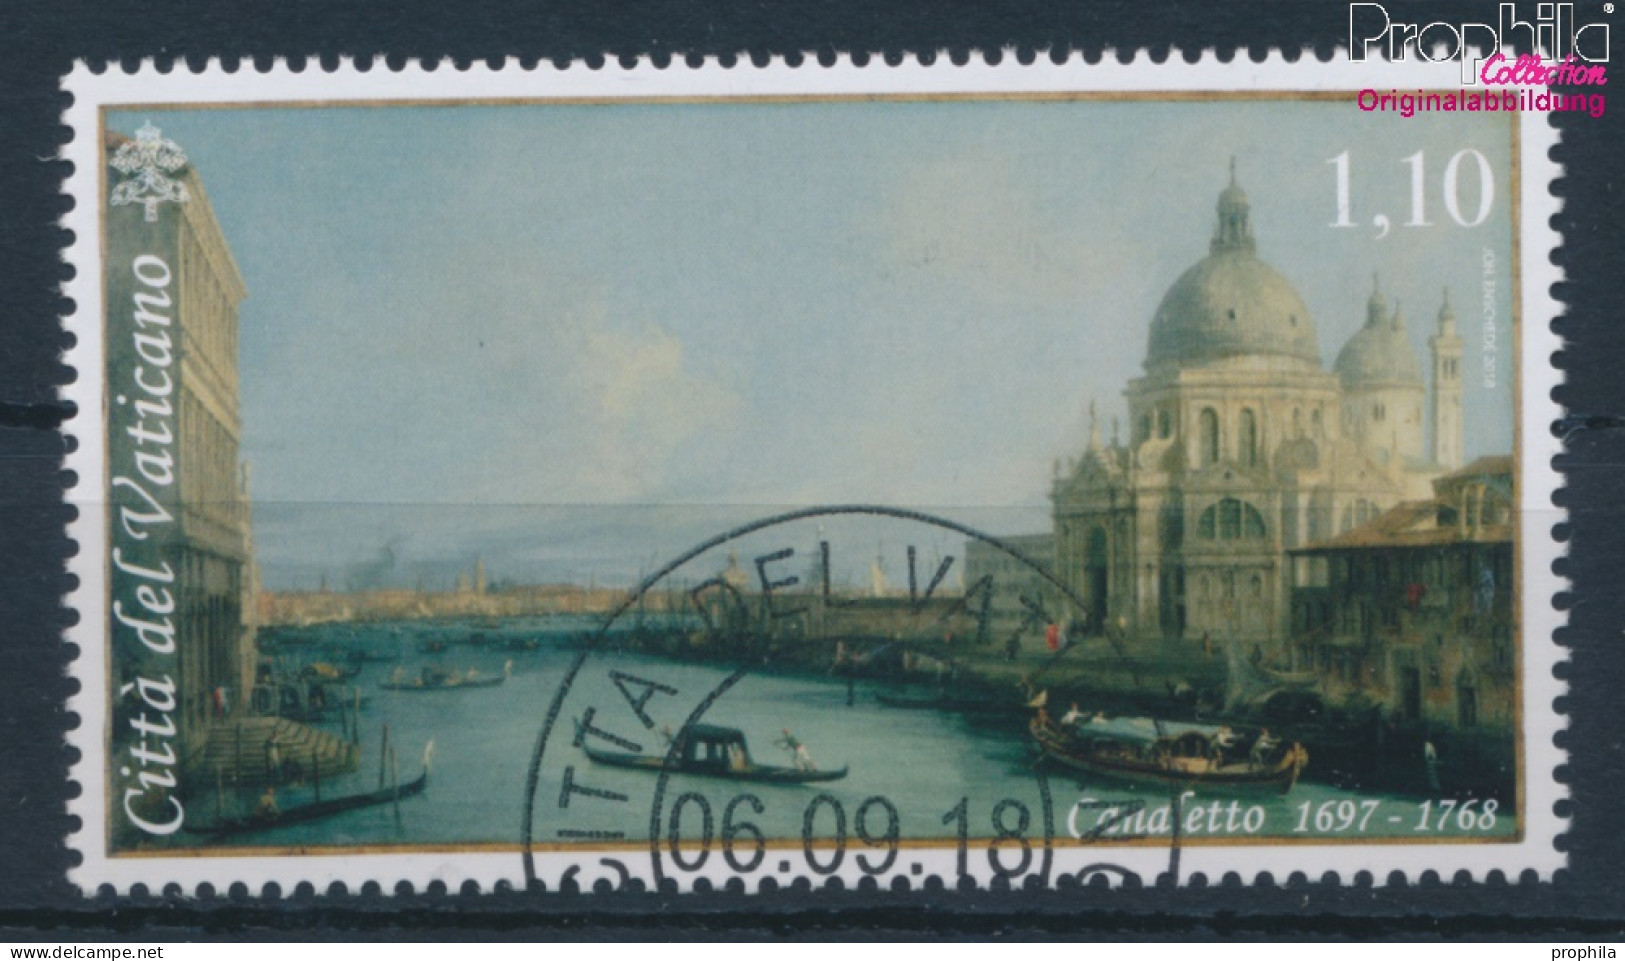 Vatikanstadt 1939 (kompl.Ausg.) Gestempelt 2018 Bedeutende Venezianische Maler (10405932 - Oblitérés